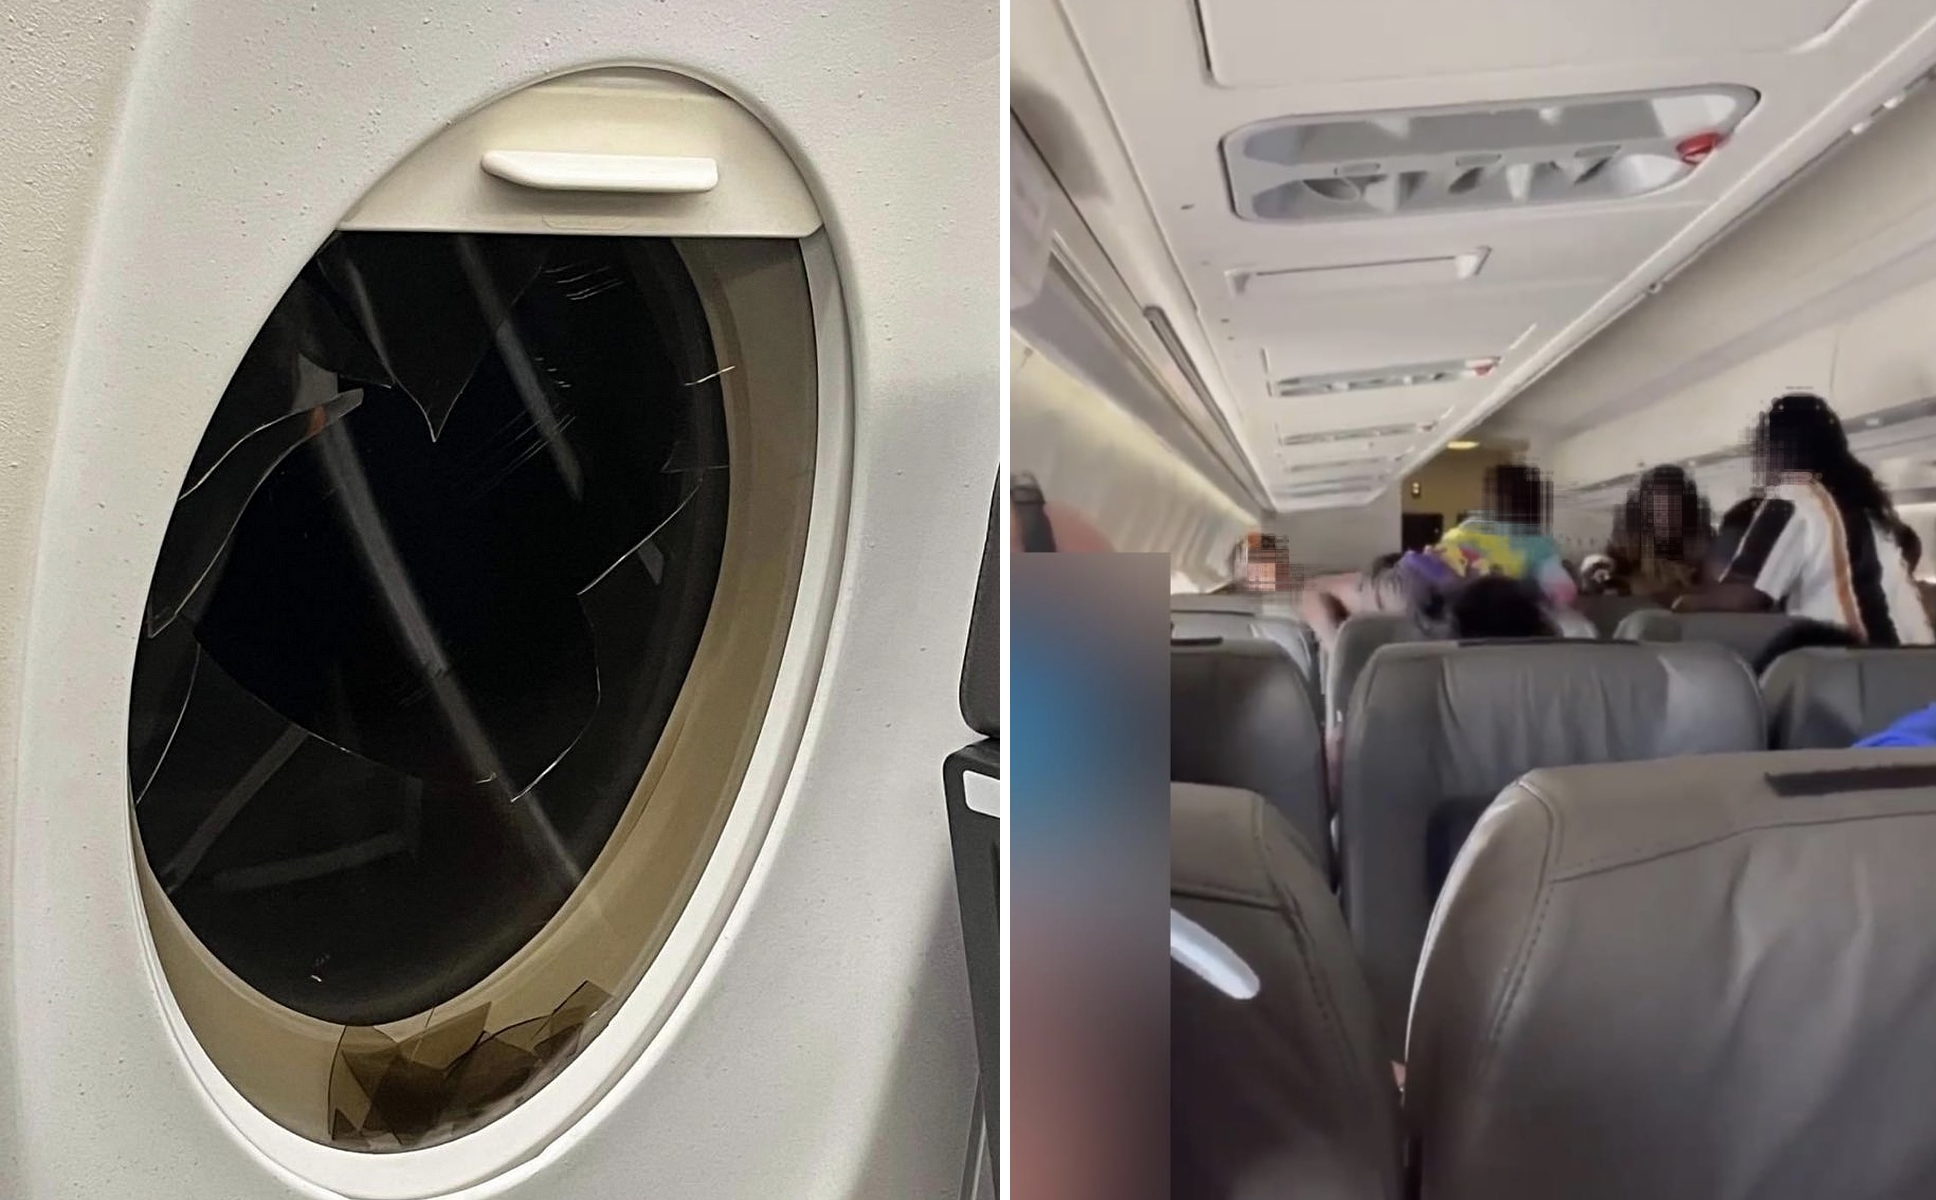 Káoszjárat: úgy összeverekedtek az utasok, hogy még egy ablak is betört a repülőn, kényszerleszállást kellett végrehajtani